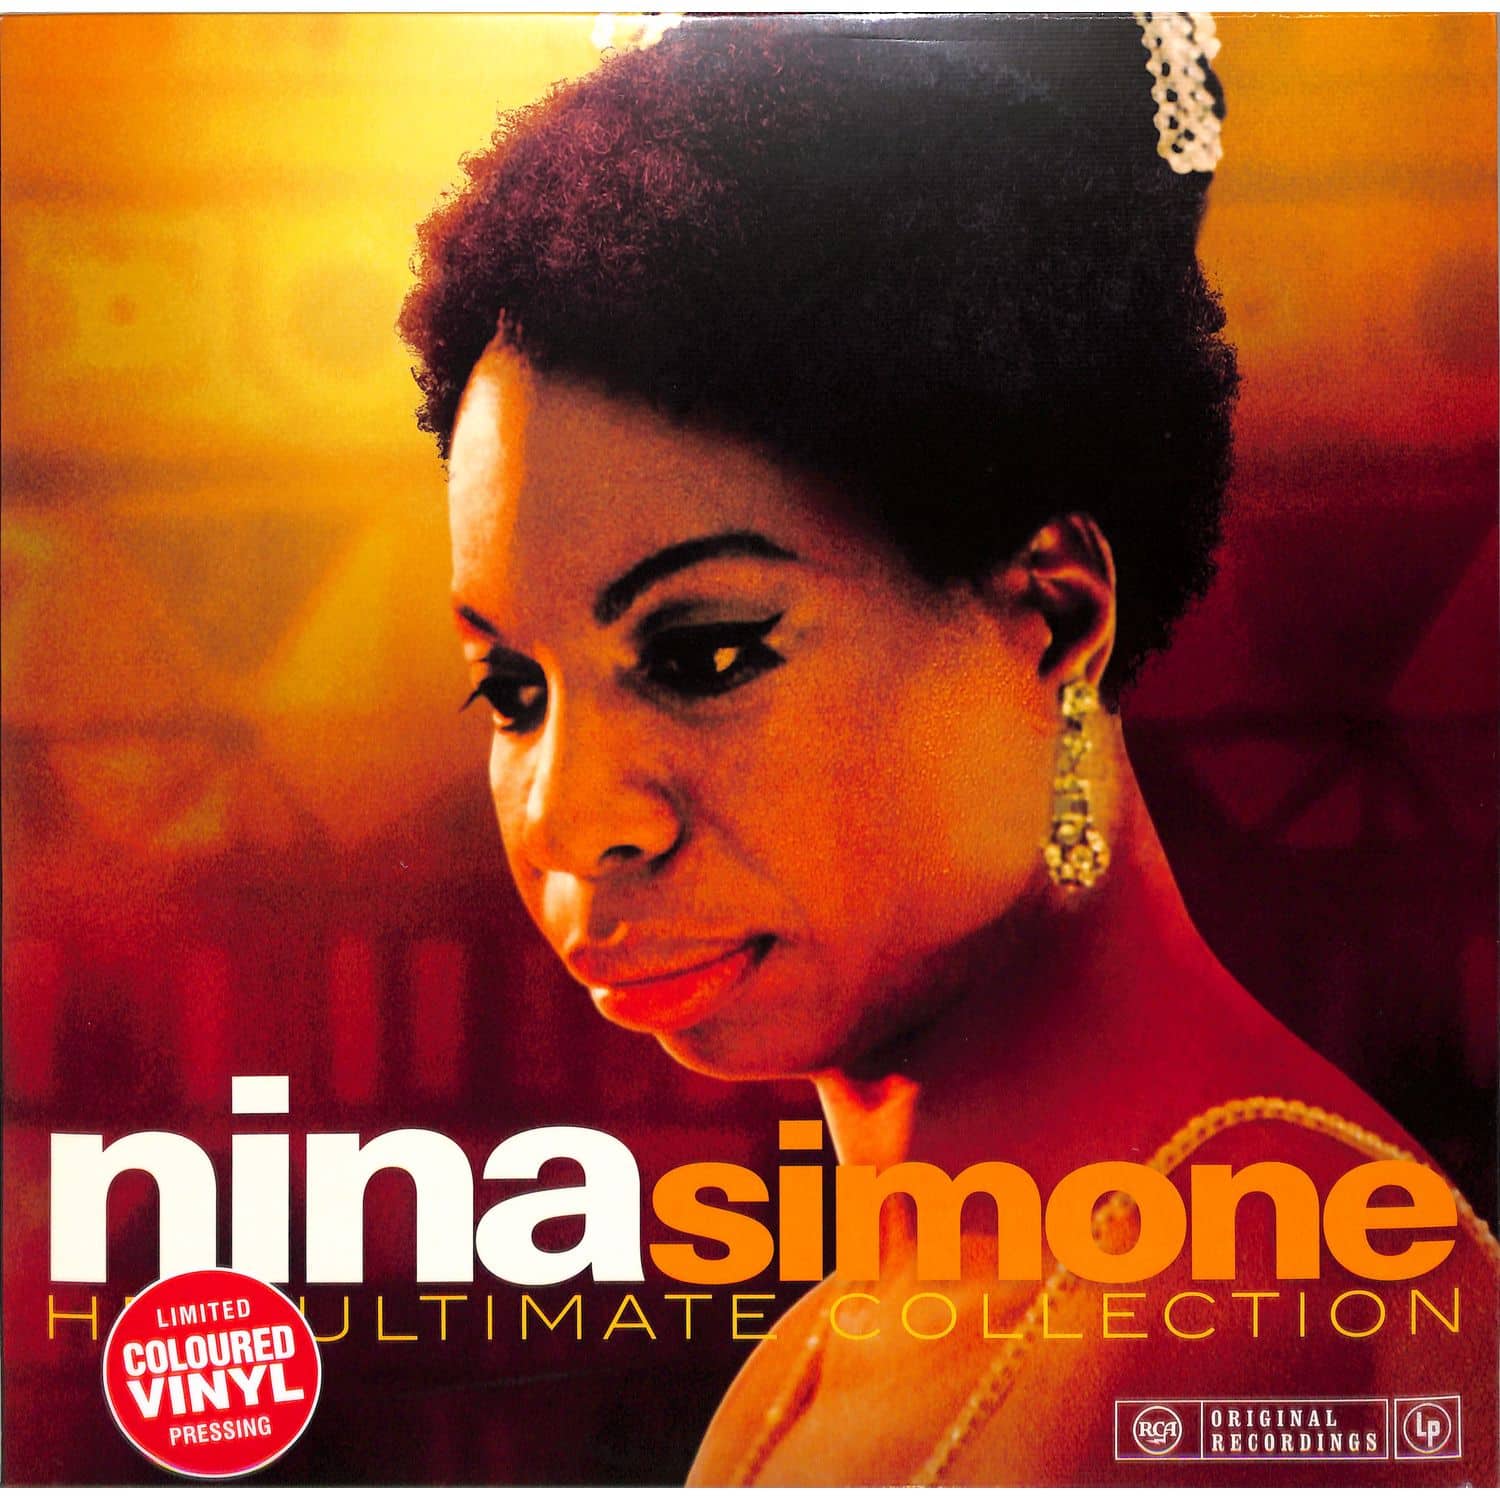 Nina Simone - HER ULTIMATE COLLECTION 